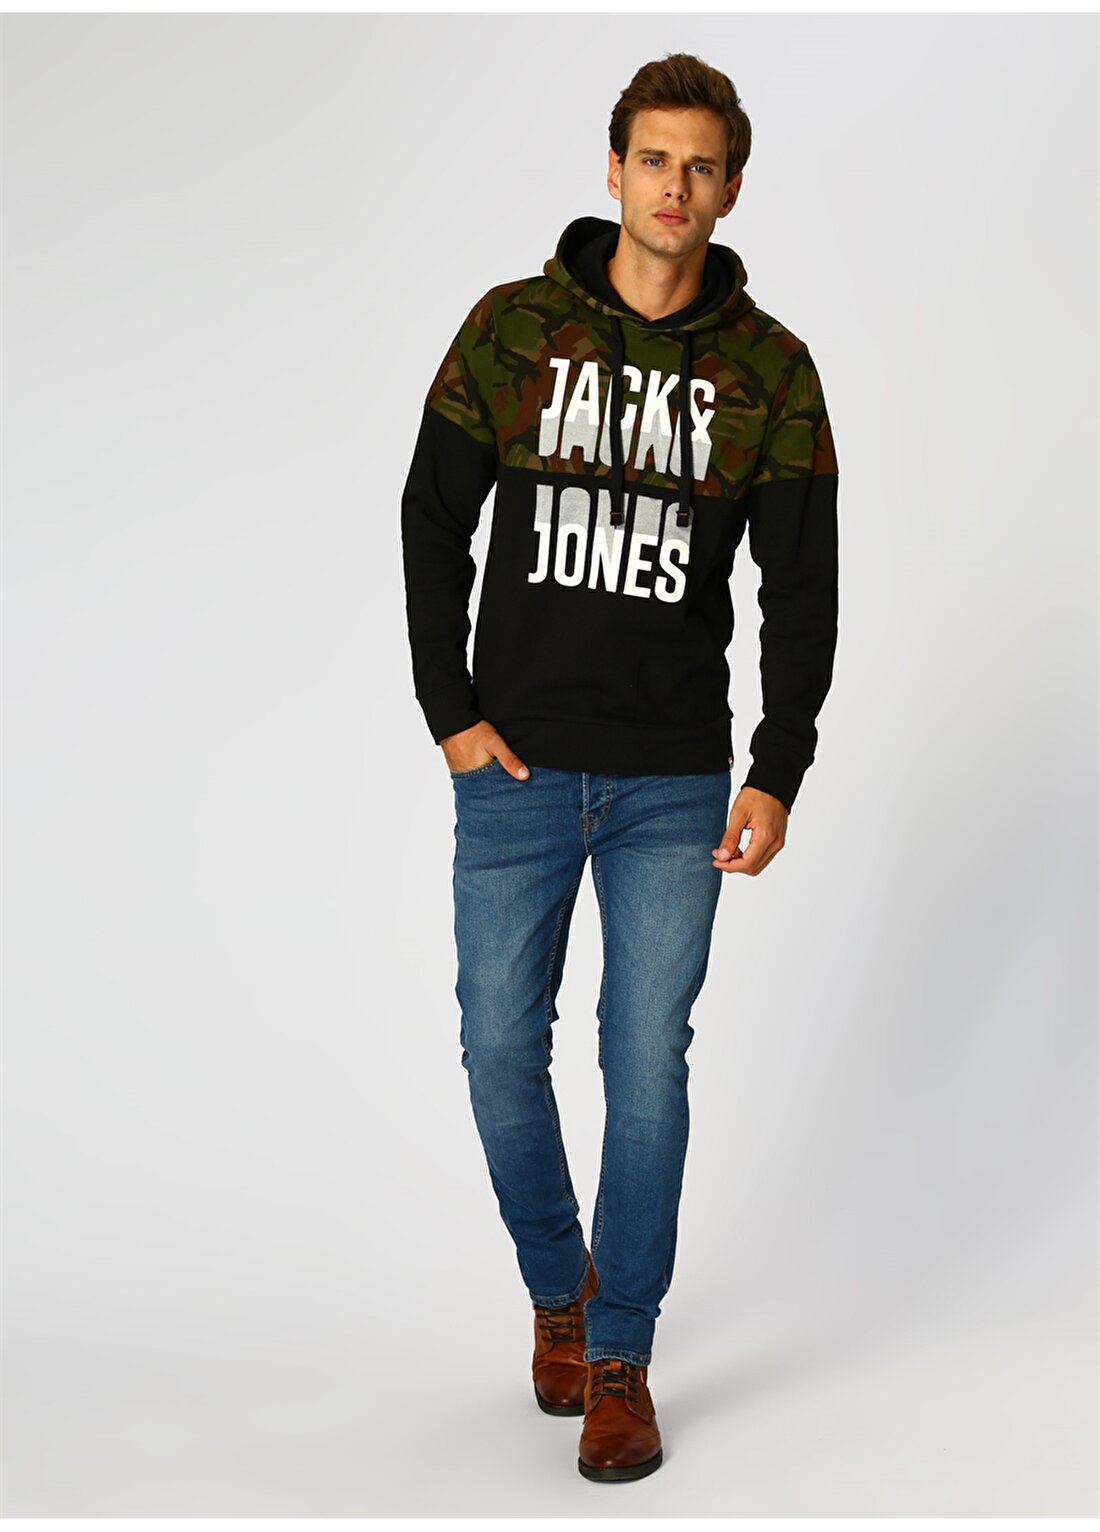 Jack & Jones Harry Sweat Green Camo Pack Hoodie Sweatshirt